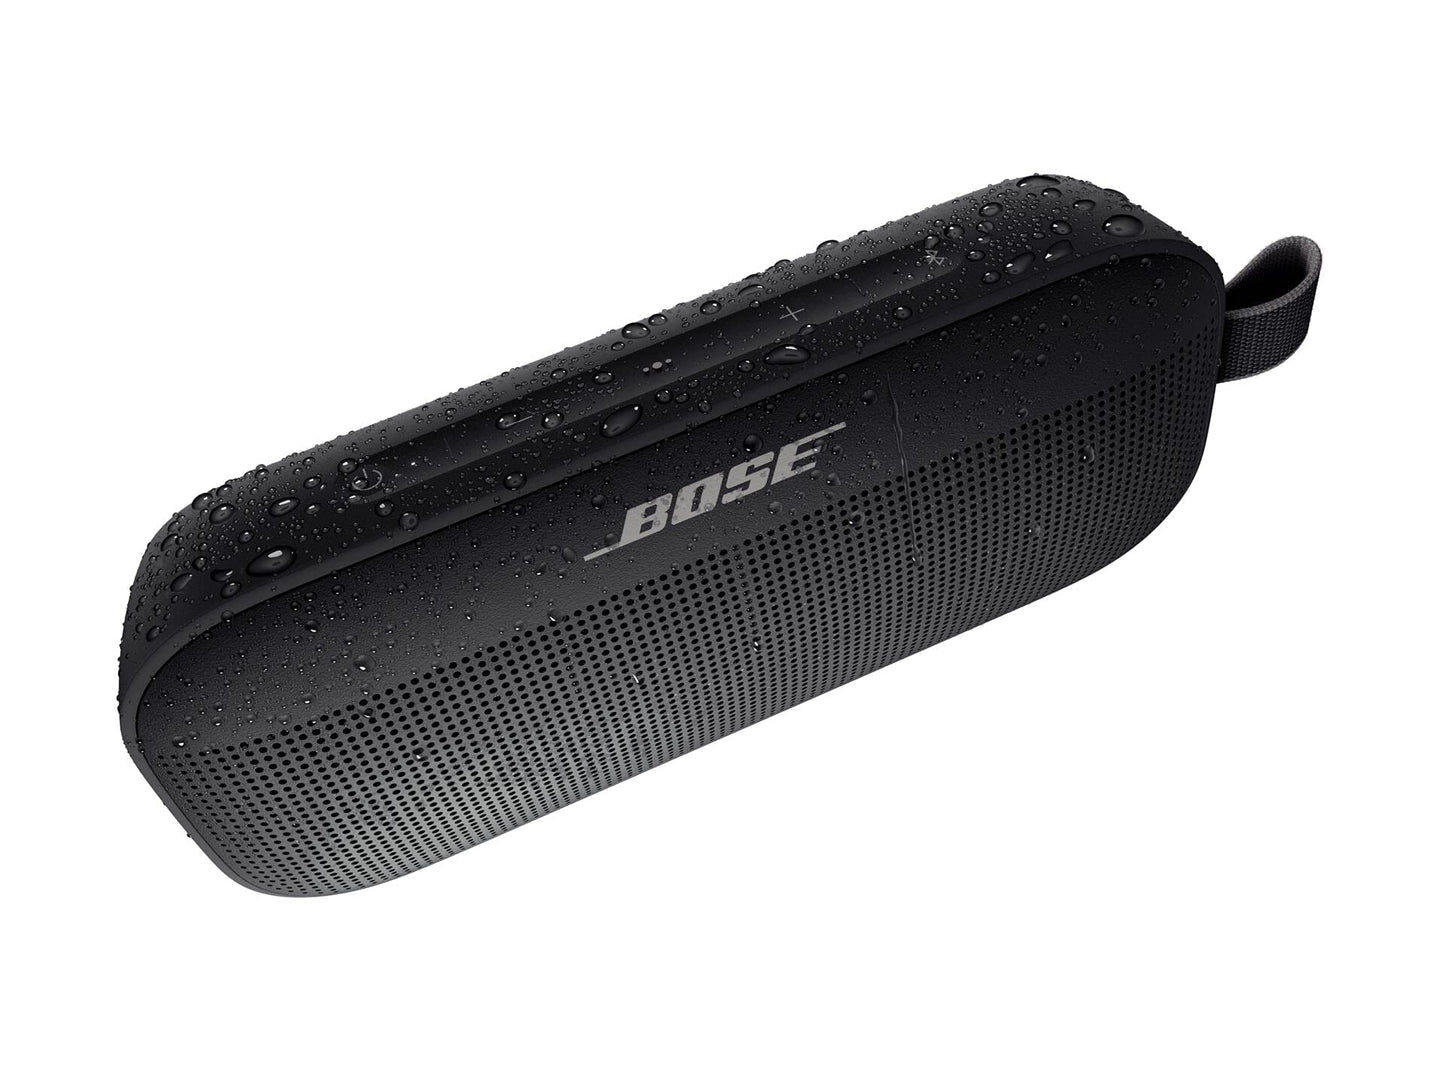 Bose Speaker